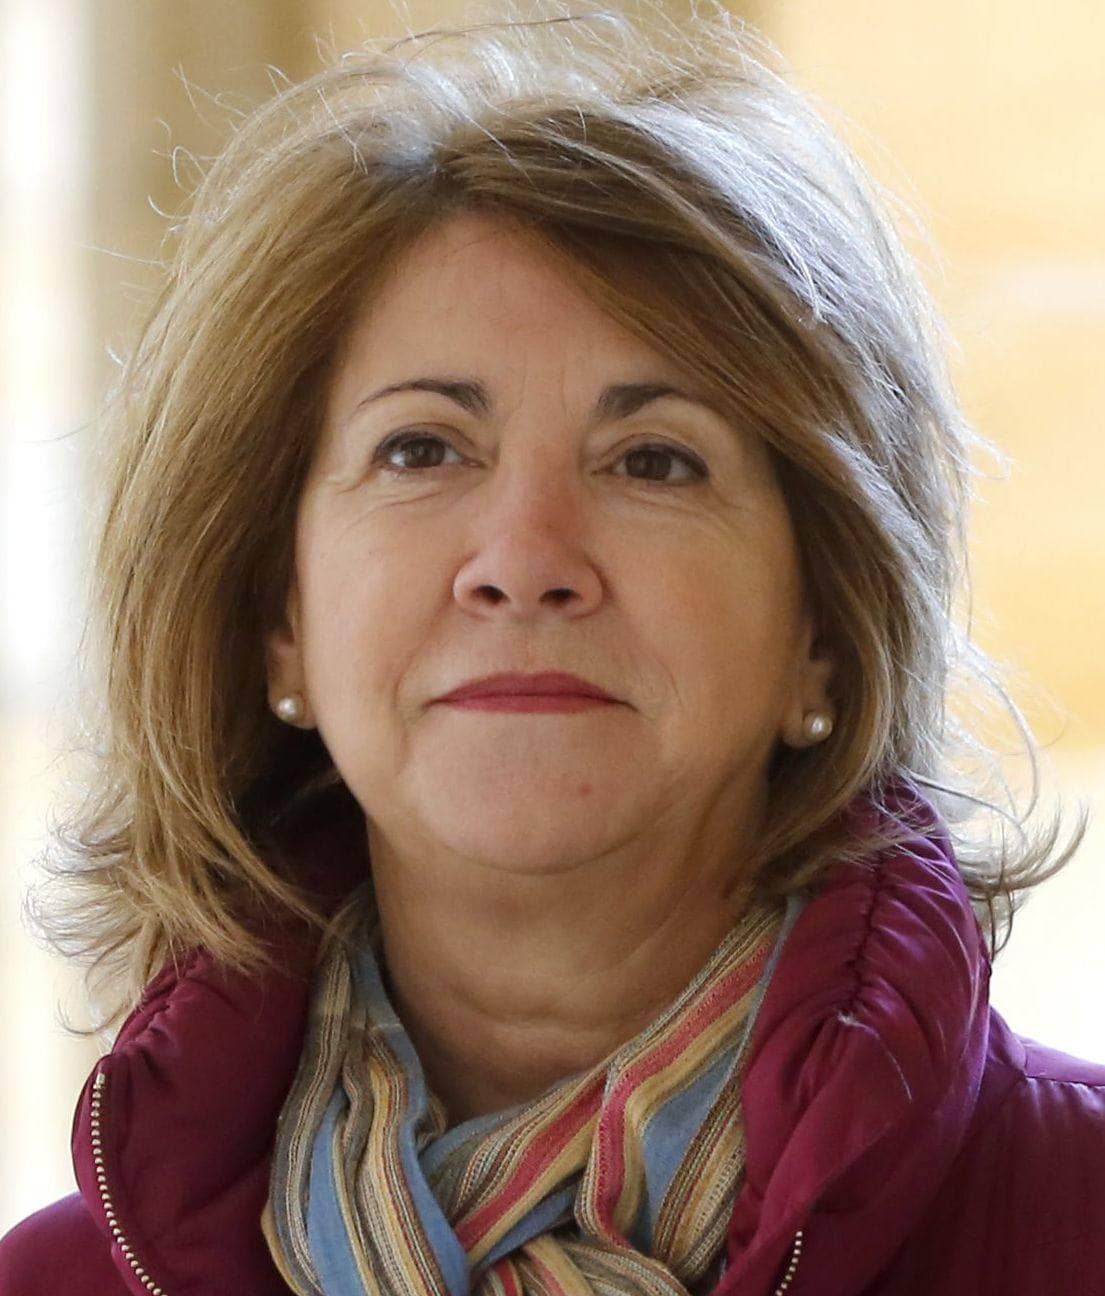 María Celia Fernández. Miembro de la mesa (PSOE Centro). 5.106,5 euros (bruto al mes).